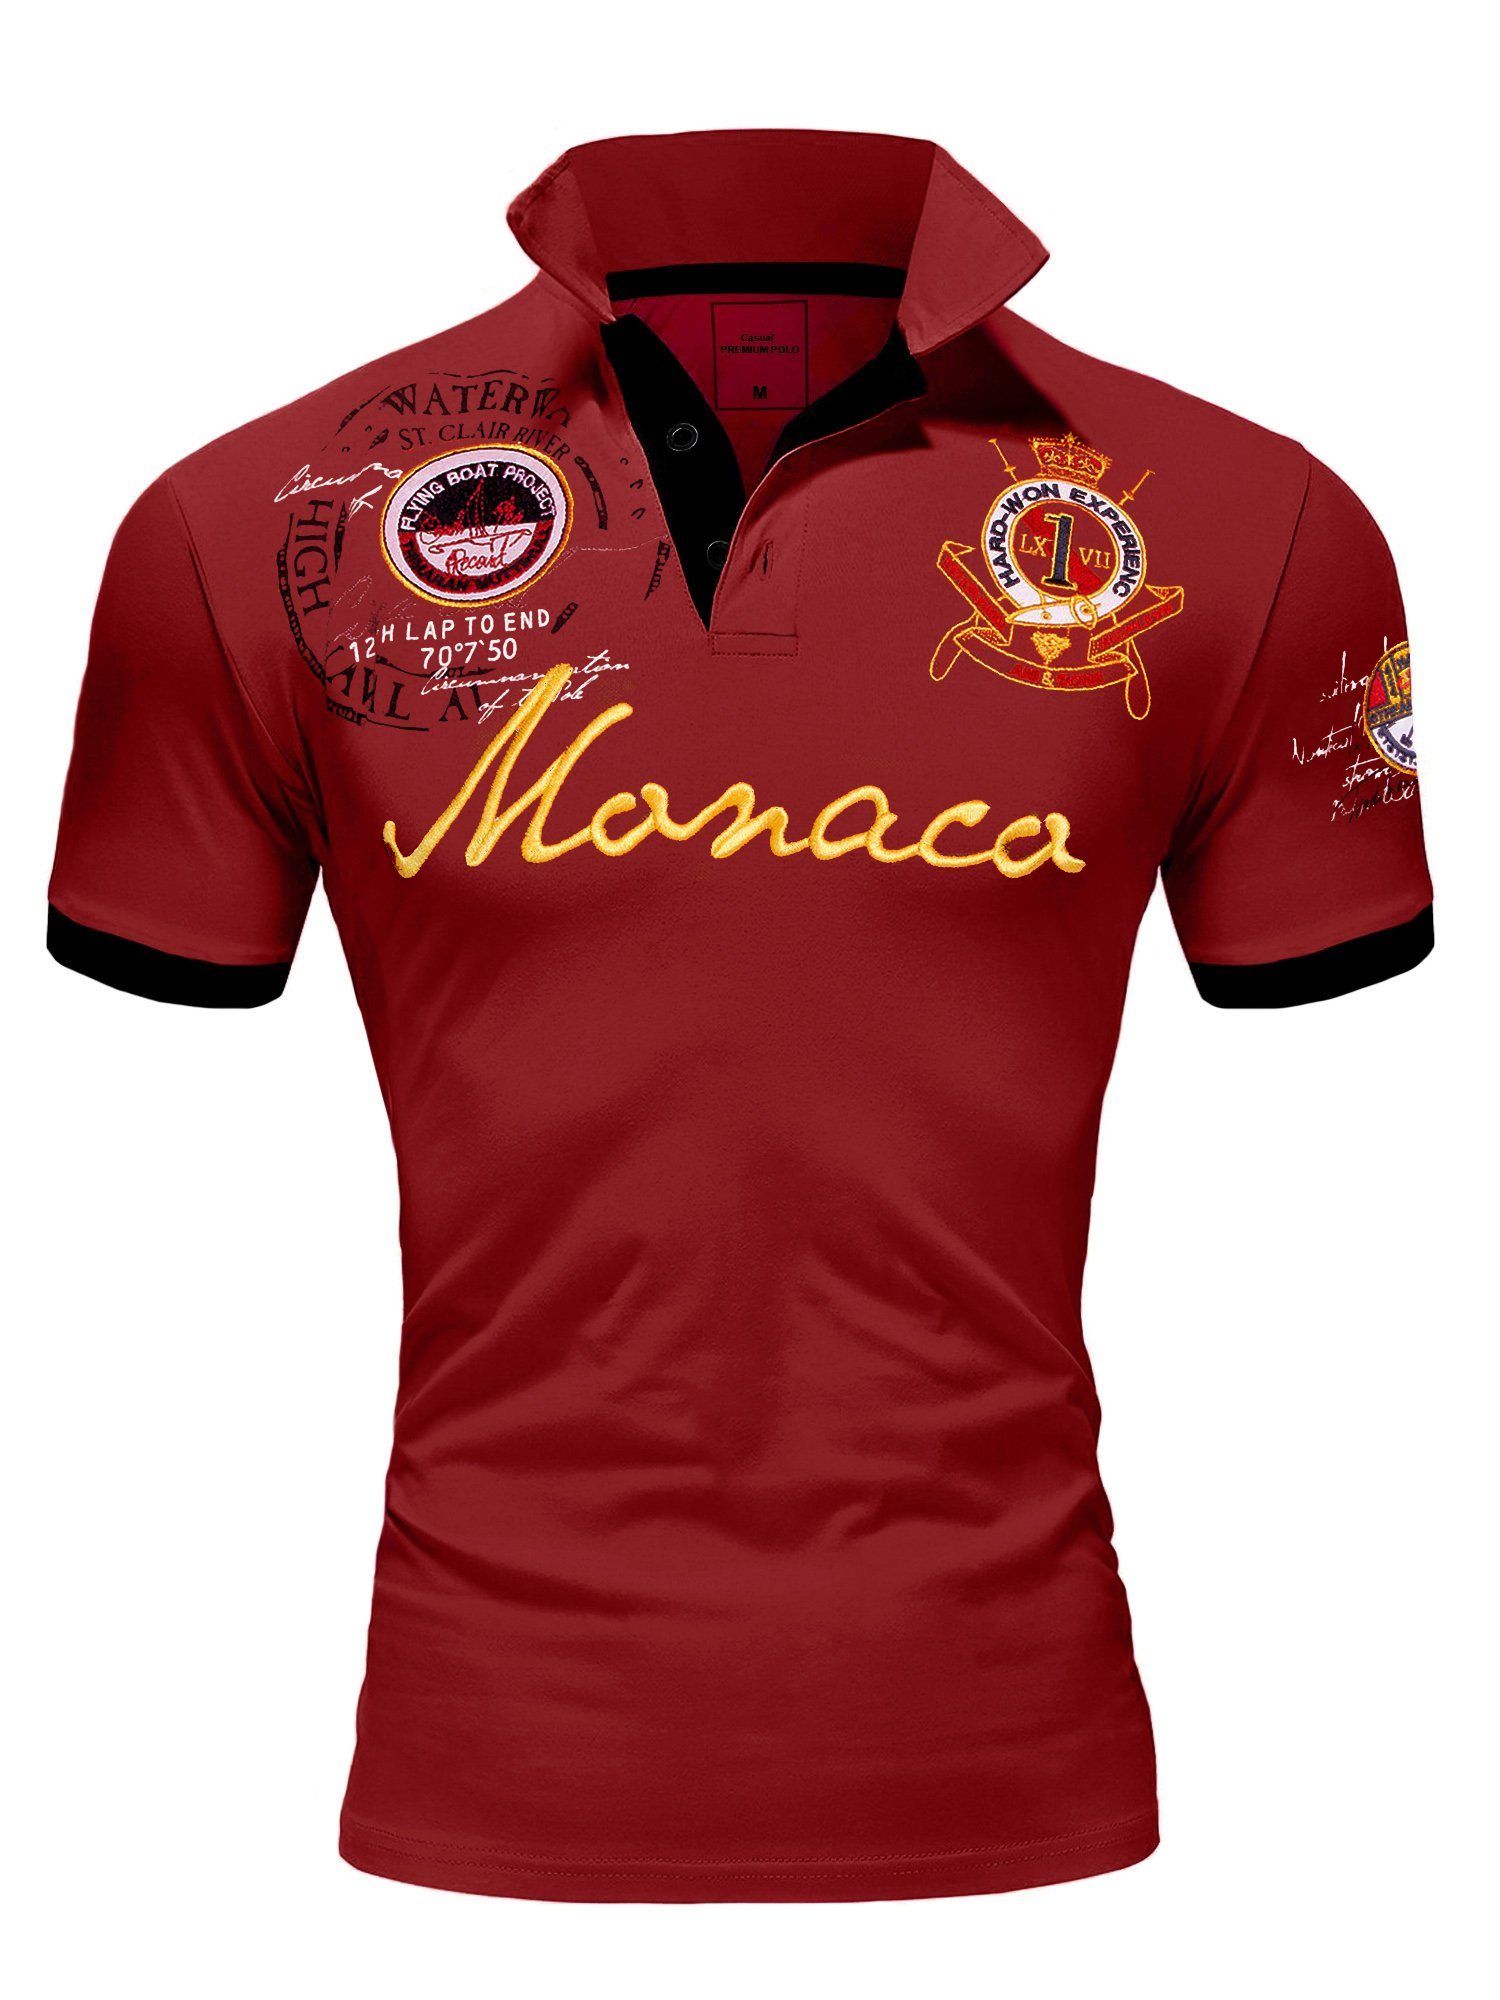 Amaci&Sons Poloshirt Monaco 2.0 Poloshirt mit Stickerei Herren Basic Kontrast Monaco Stickerei Kurzarm Polohemd T-Shirt Bordeaux | Poloshirts